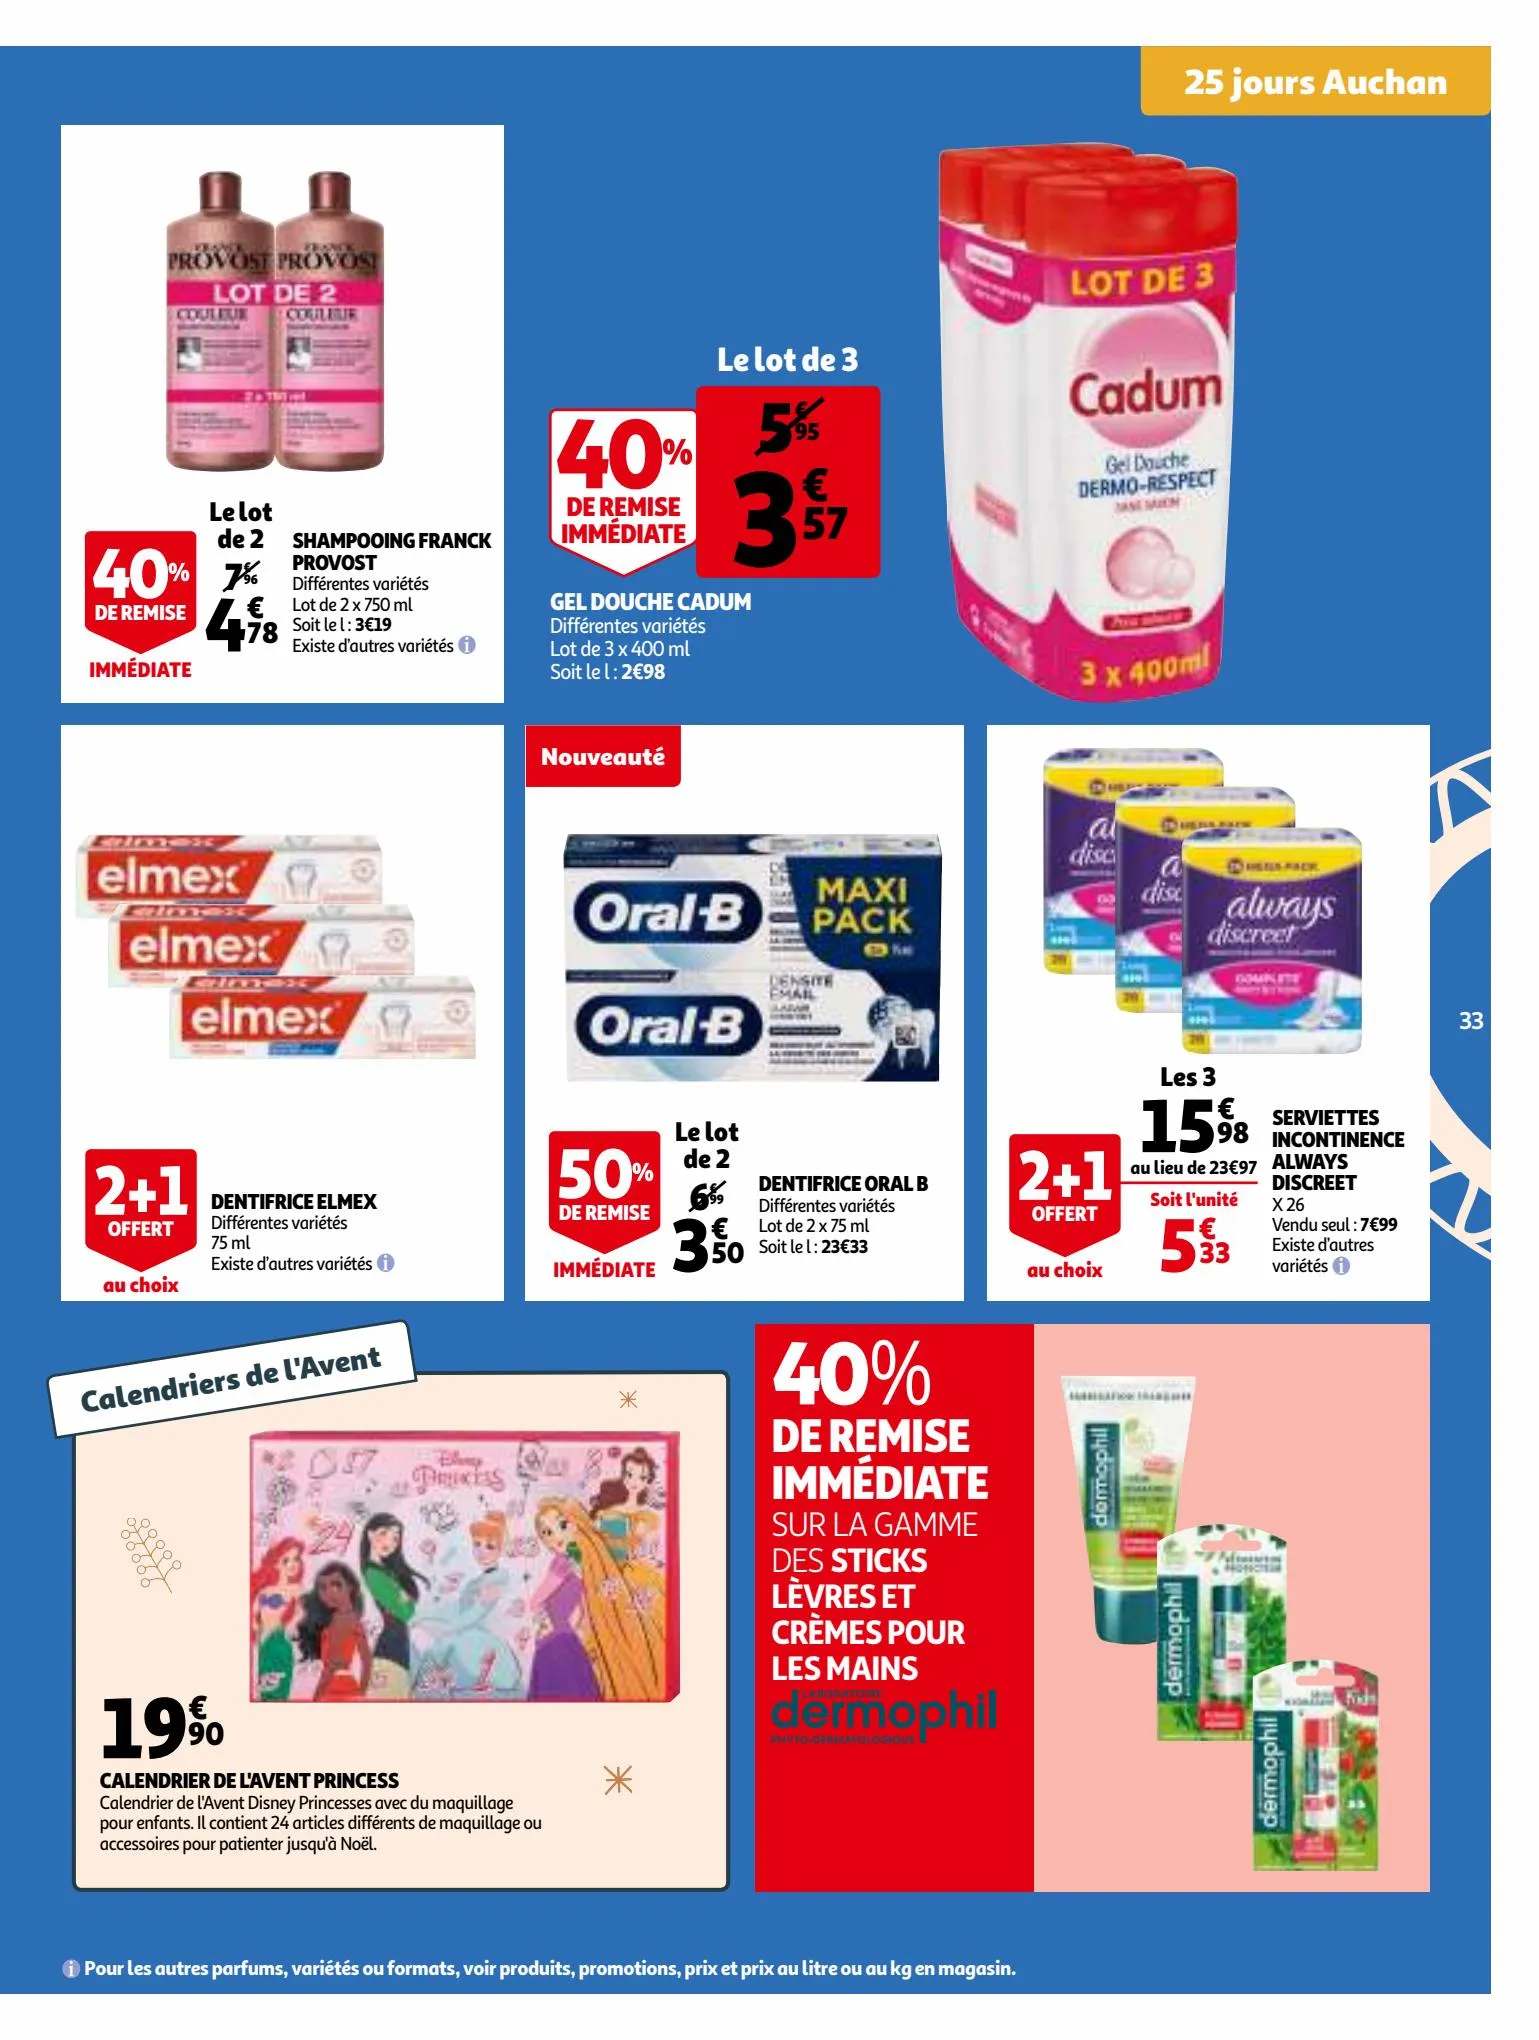 Catalogue 25 Jours Auchan, page 00033